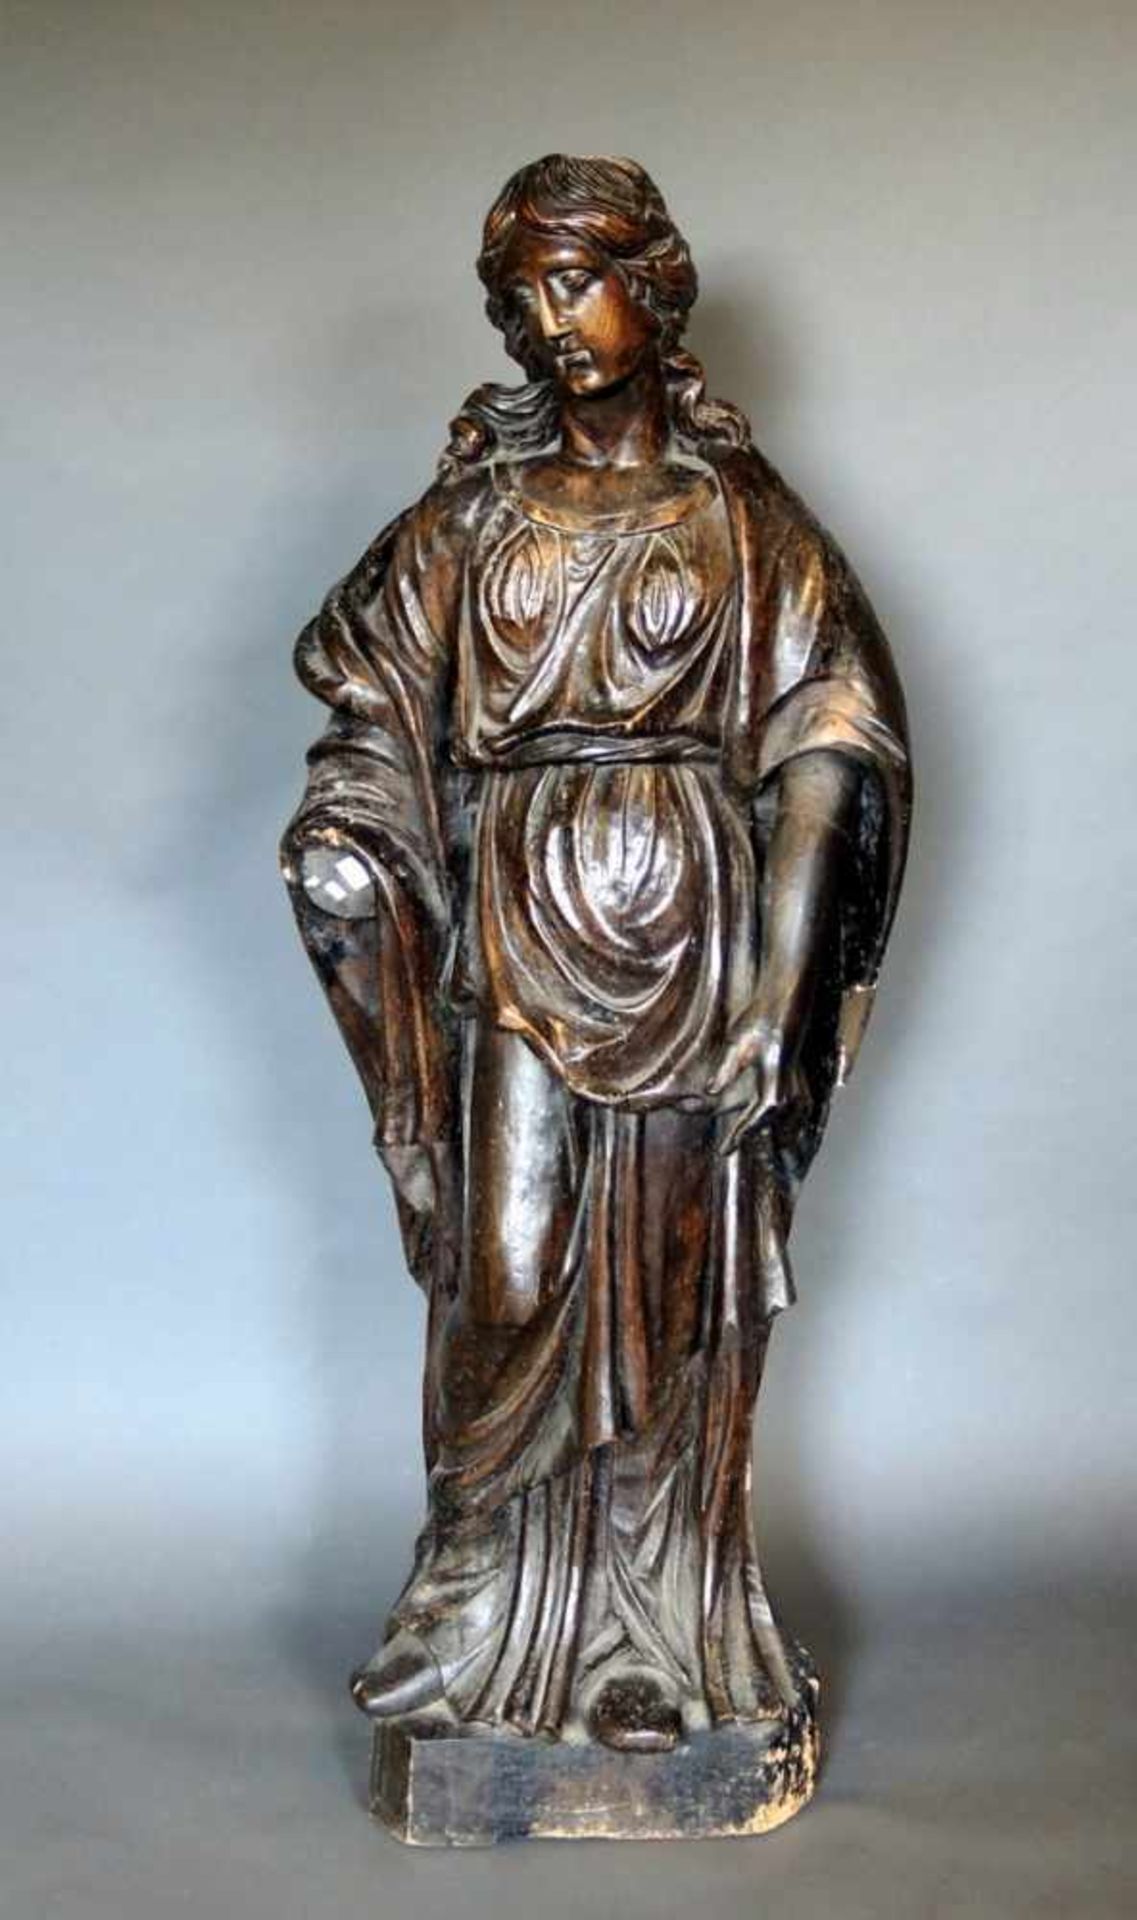 Große Heiligenfigur Holz geschnitzt, lackiert. Weibliche Figur in Menschengröße in antiken